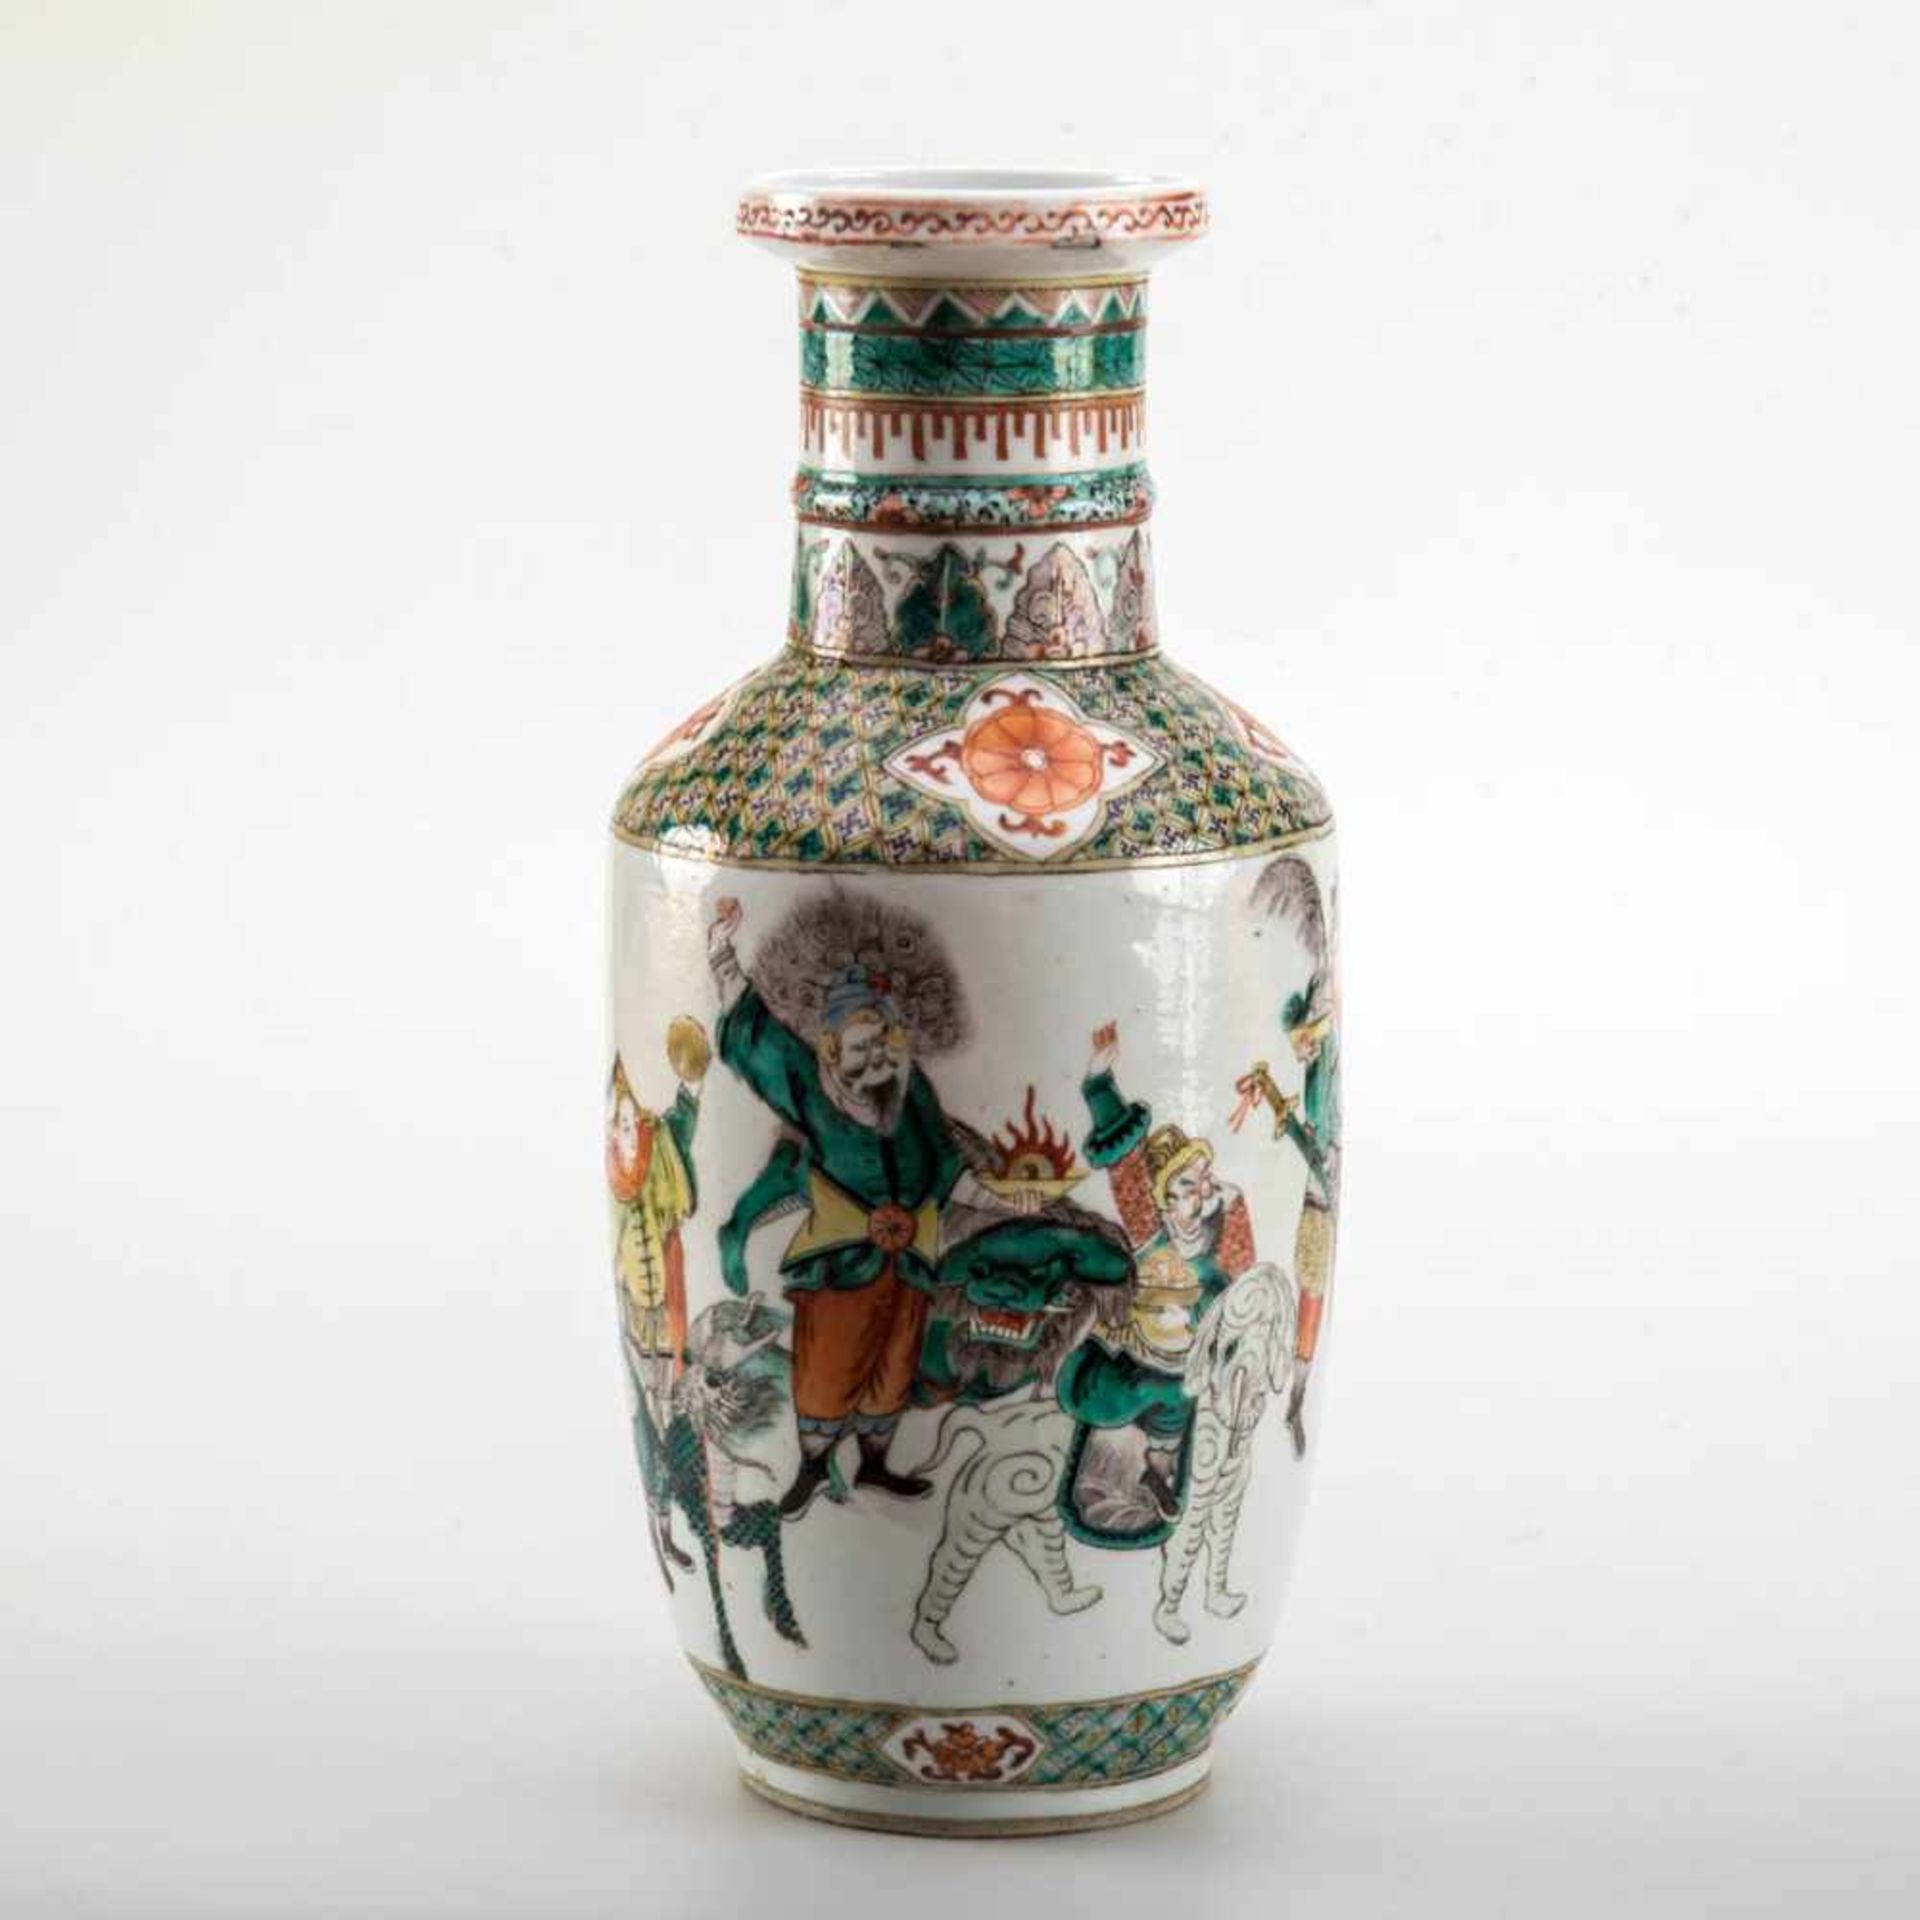 Ziervase, China um 1900 Porzellan polychrom mit Darstellungen von Kriegern bemalt. Schuler mit - Image 2 of 2